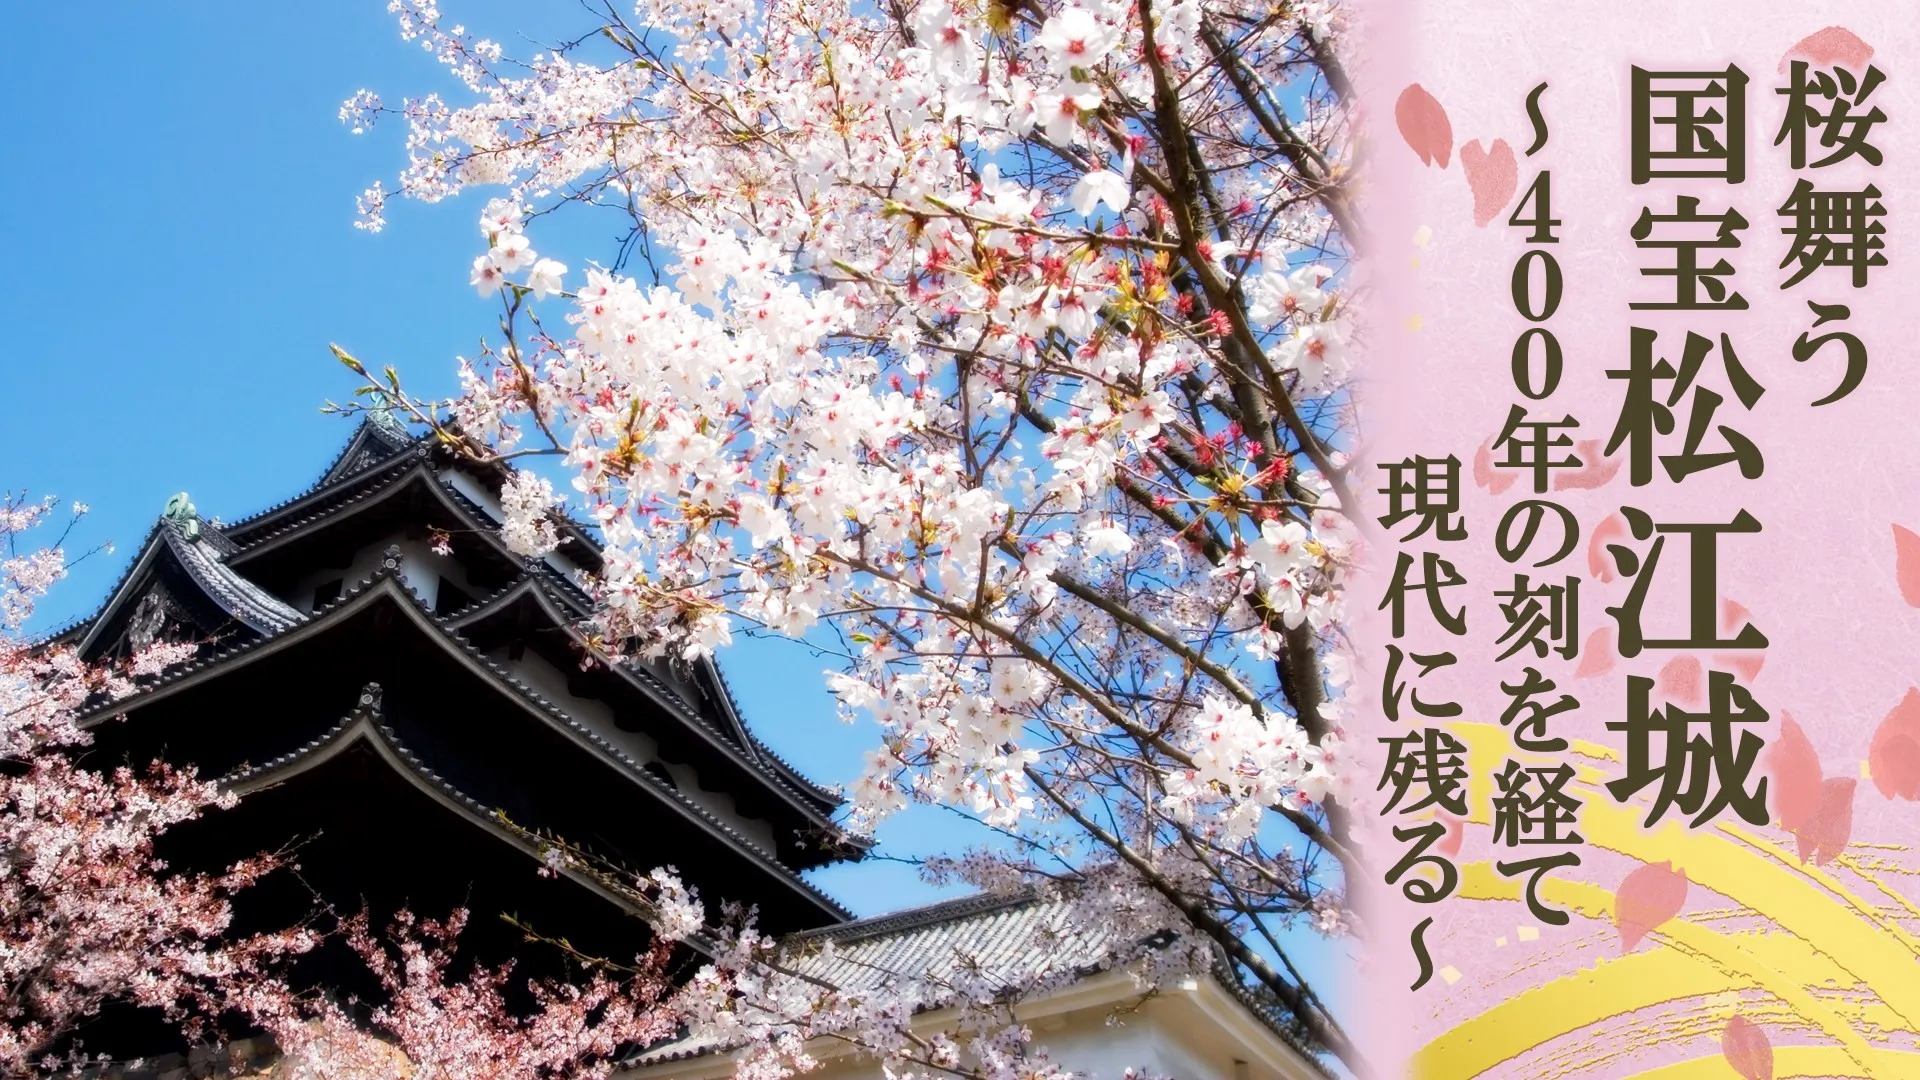 桜舞う国宝松江城～400年の刻を経て現代に残る～